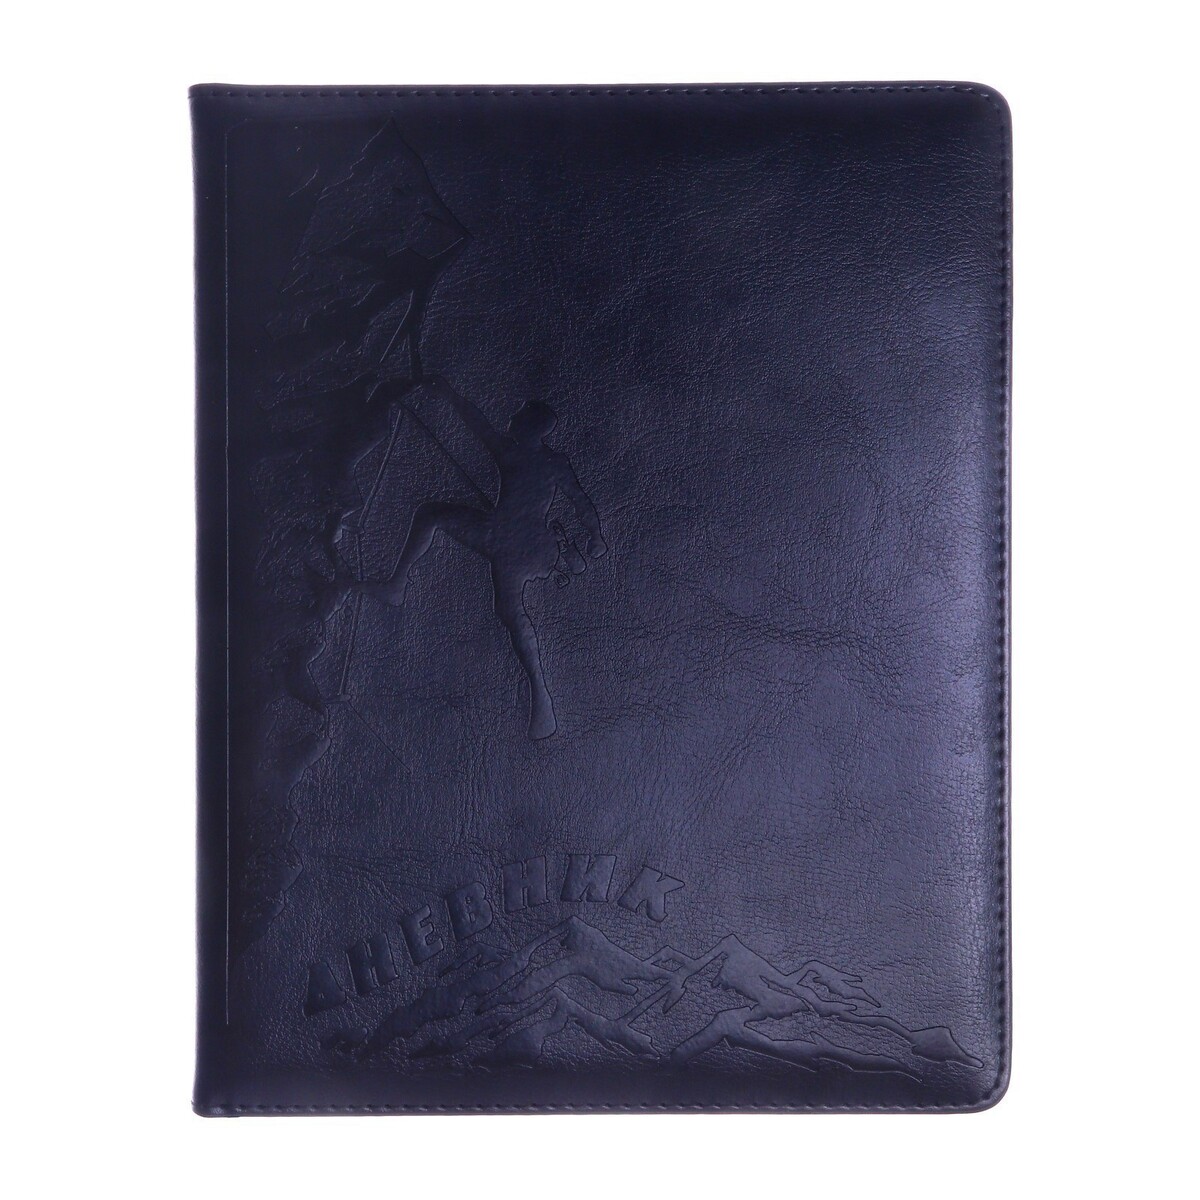 Дневник школьный, 5-11 класс, обложка пвх, скалолаз, черный дневник шк original style синий искусств кожа термотиснение резинка